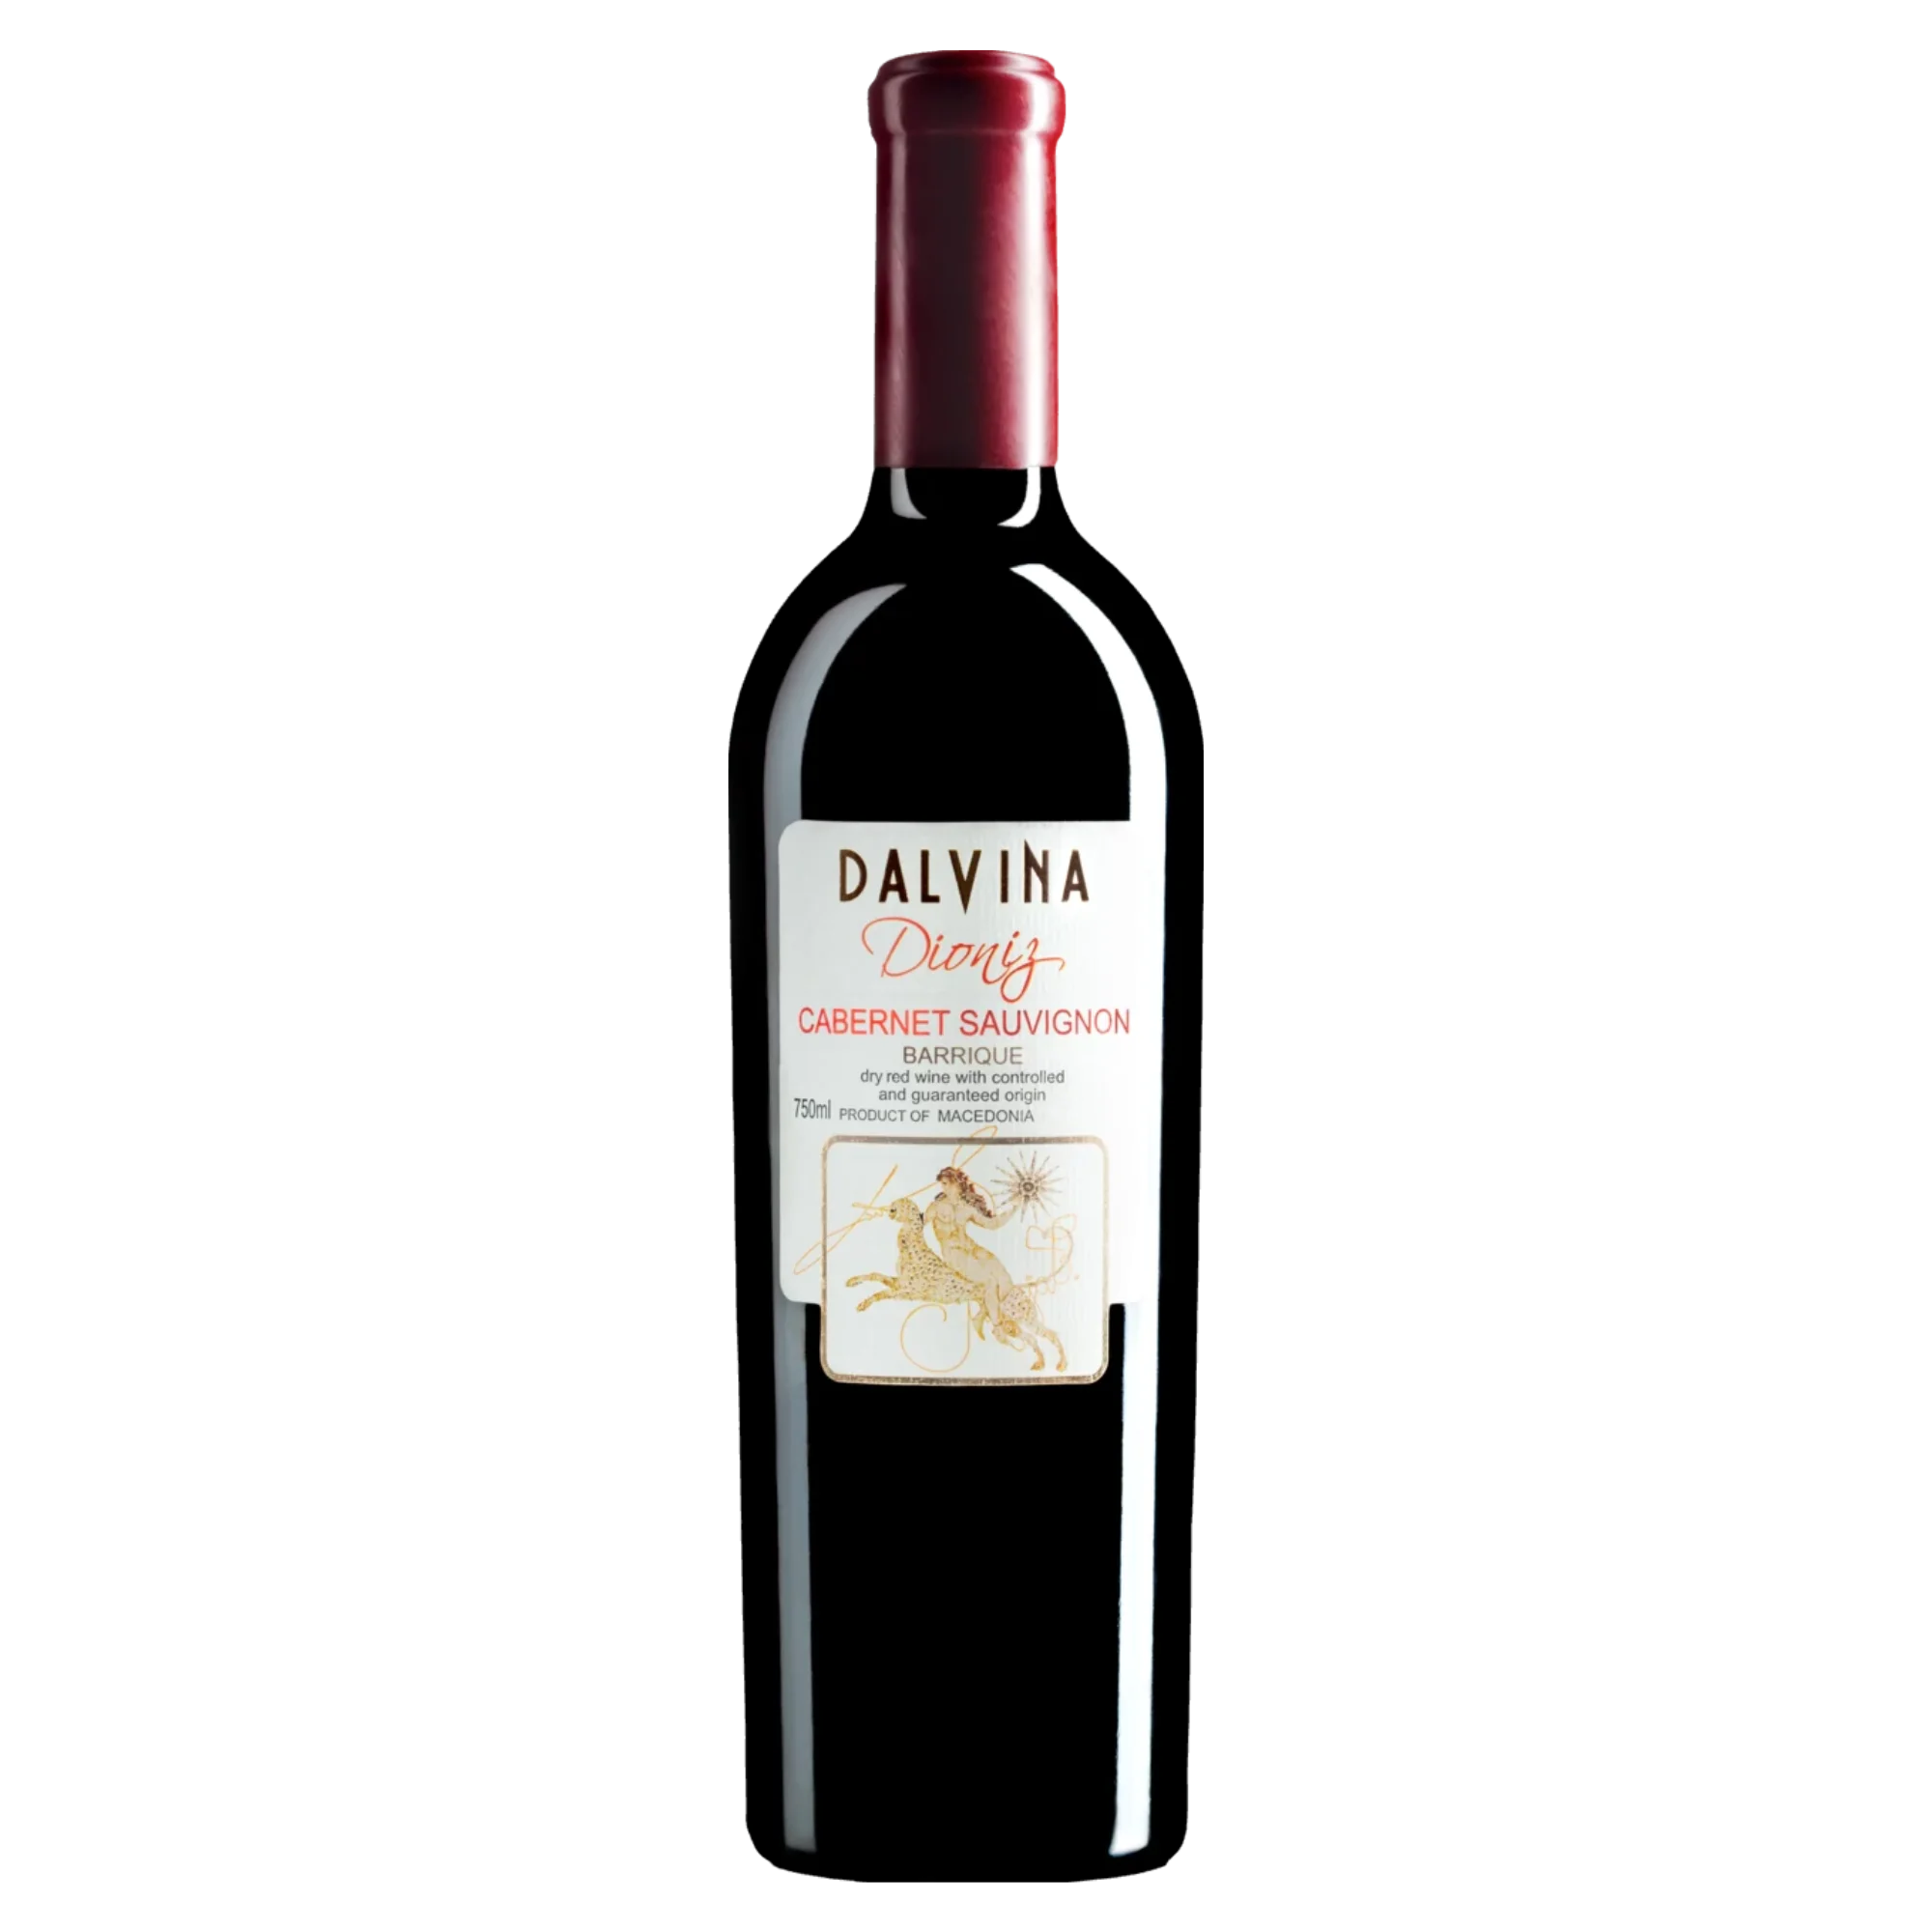 Dioniz Cabernet Sauvignon Barrique 2016 - Rotwein trocken aus Nordmazedonien - Dalvina Winery